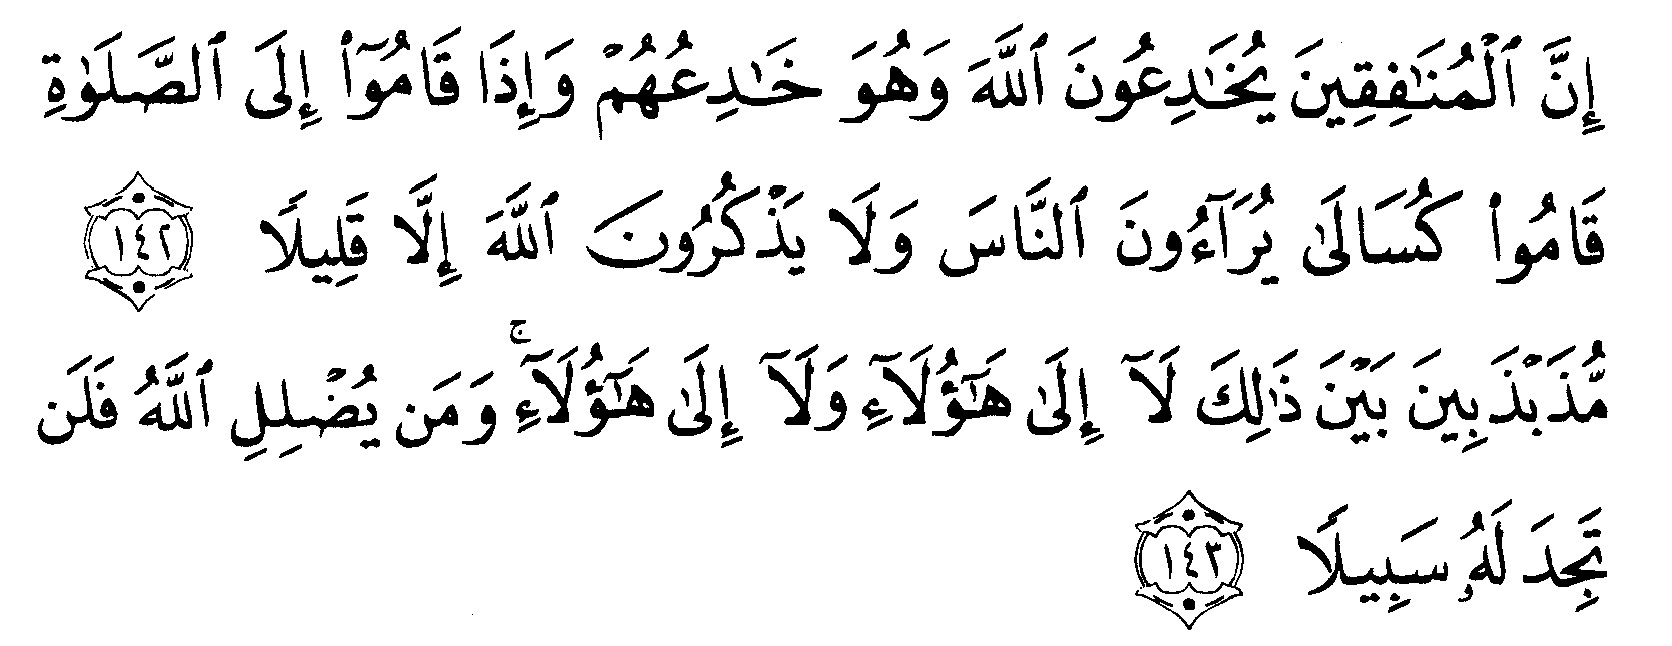 Tafsir Ibnu Katsir Surah An Nisaa Ayat 142 143 Alquranmulia